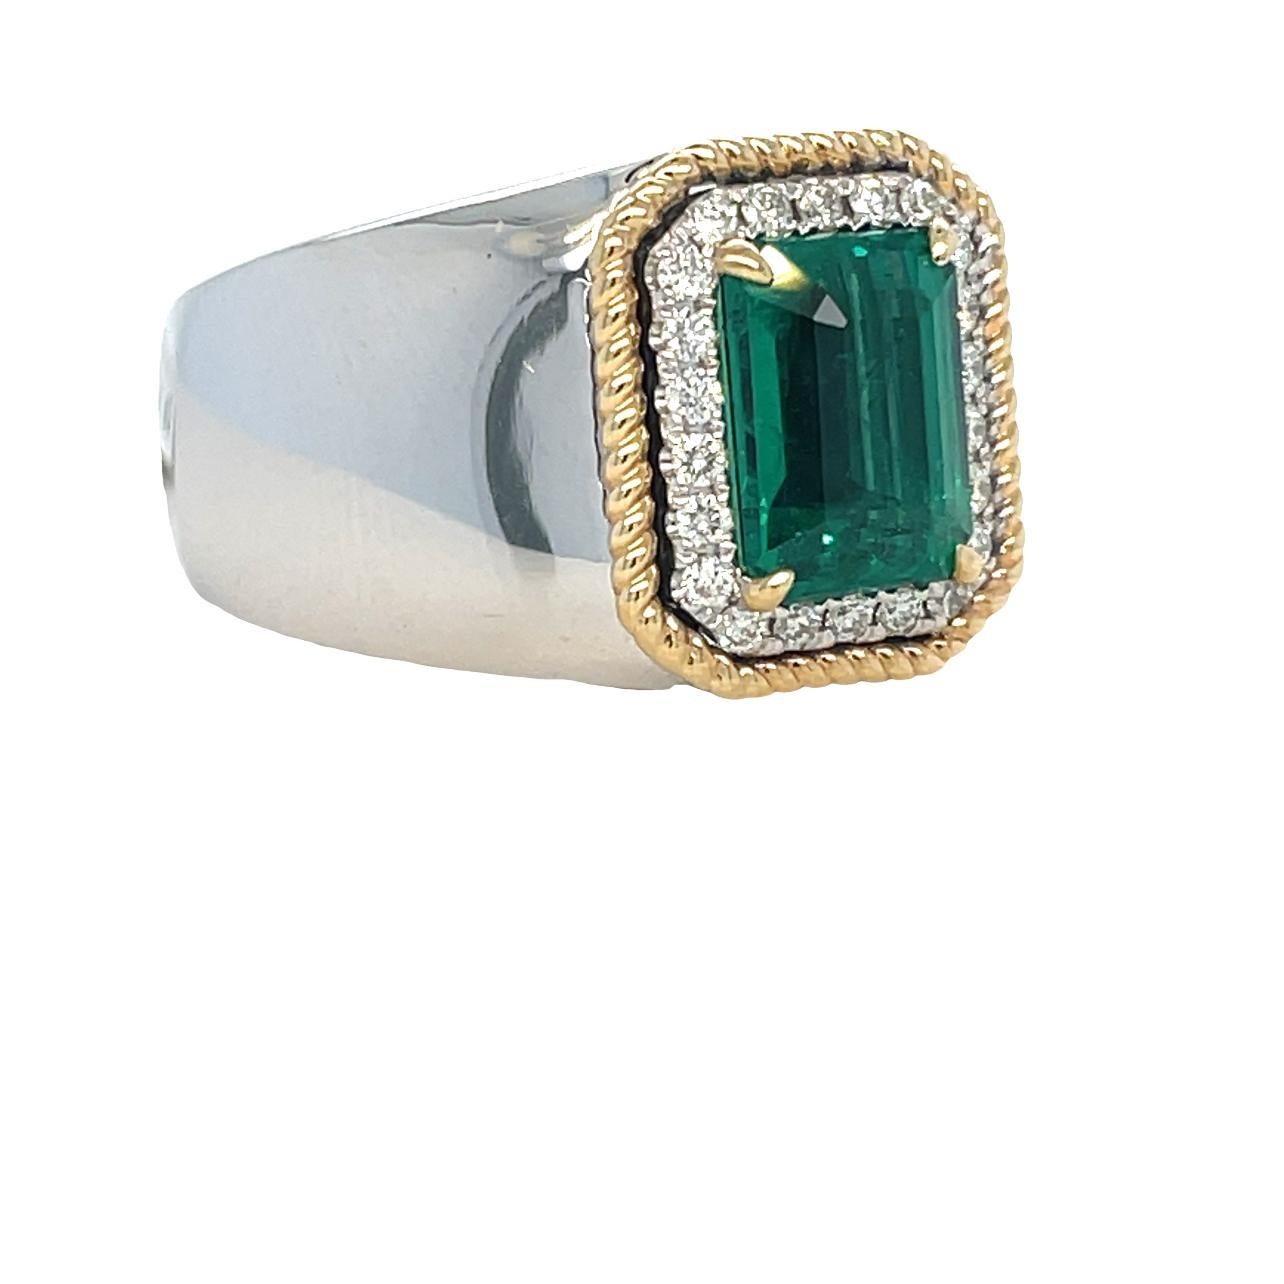 Dieser einzigartige zweifarbige Herrenring hat einen leuchtend grünen 10x7 Smaragd mit Sambia-Schliff in der Mitte, umgeben von 22 runden funkelnden Diamanten mit Brillantschliff. Der Ring ist in 14 Karat Weiß- und Gelbgold gefasst. Er wird in einer